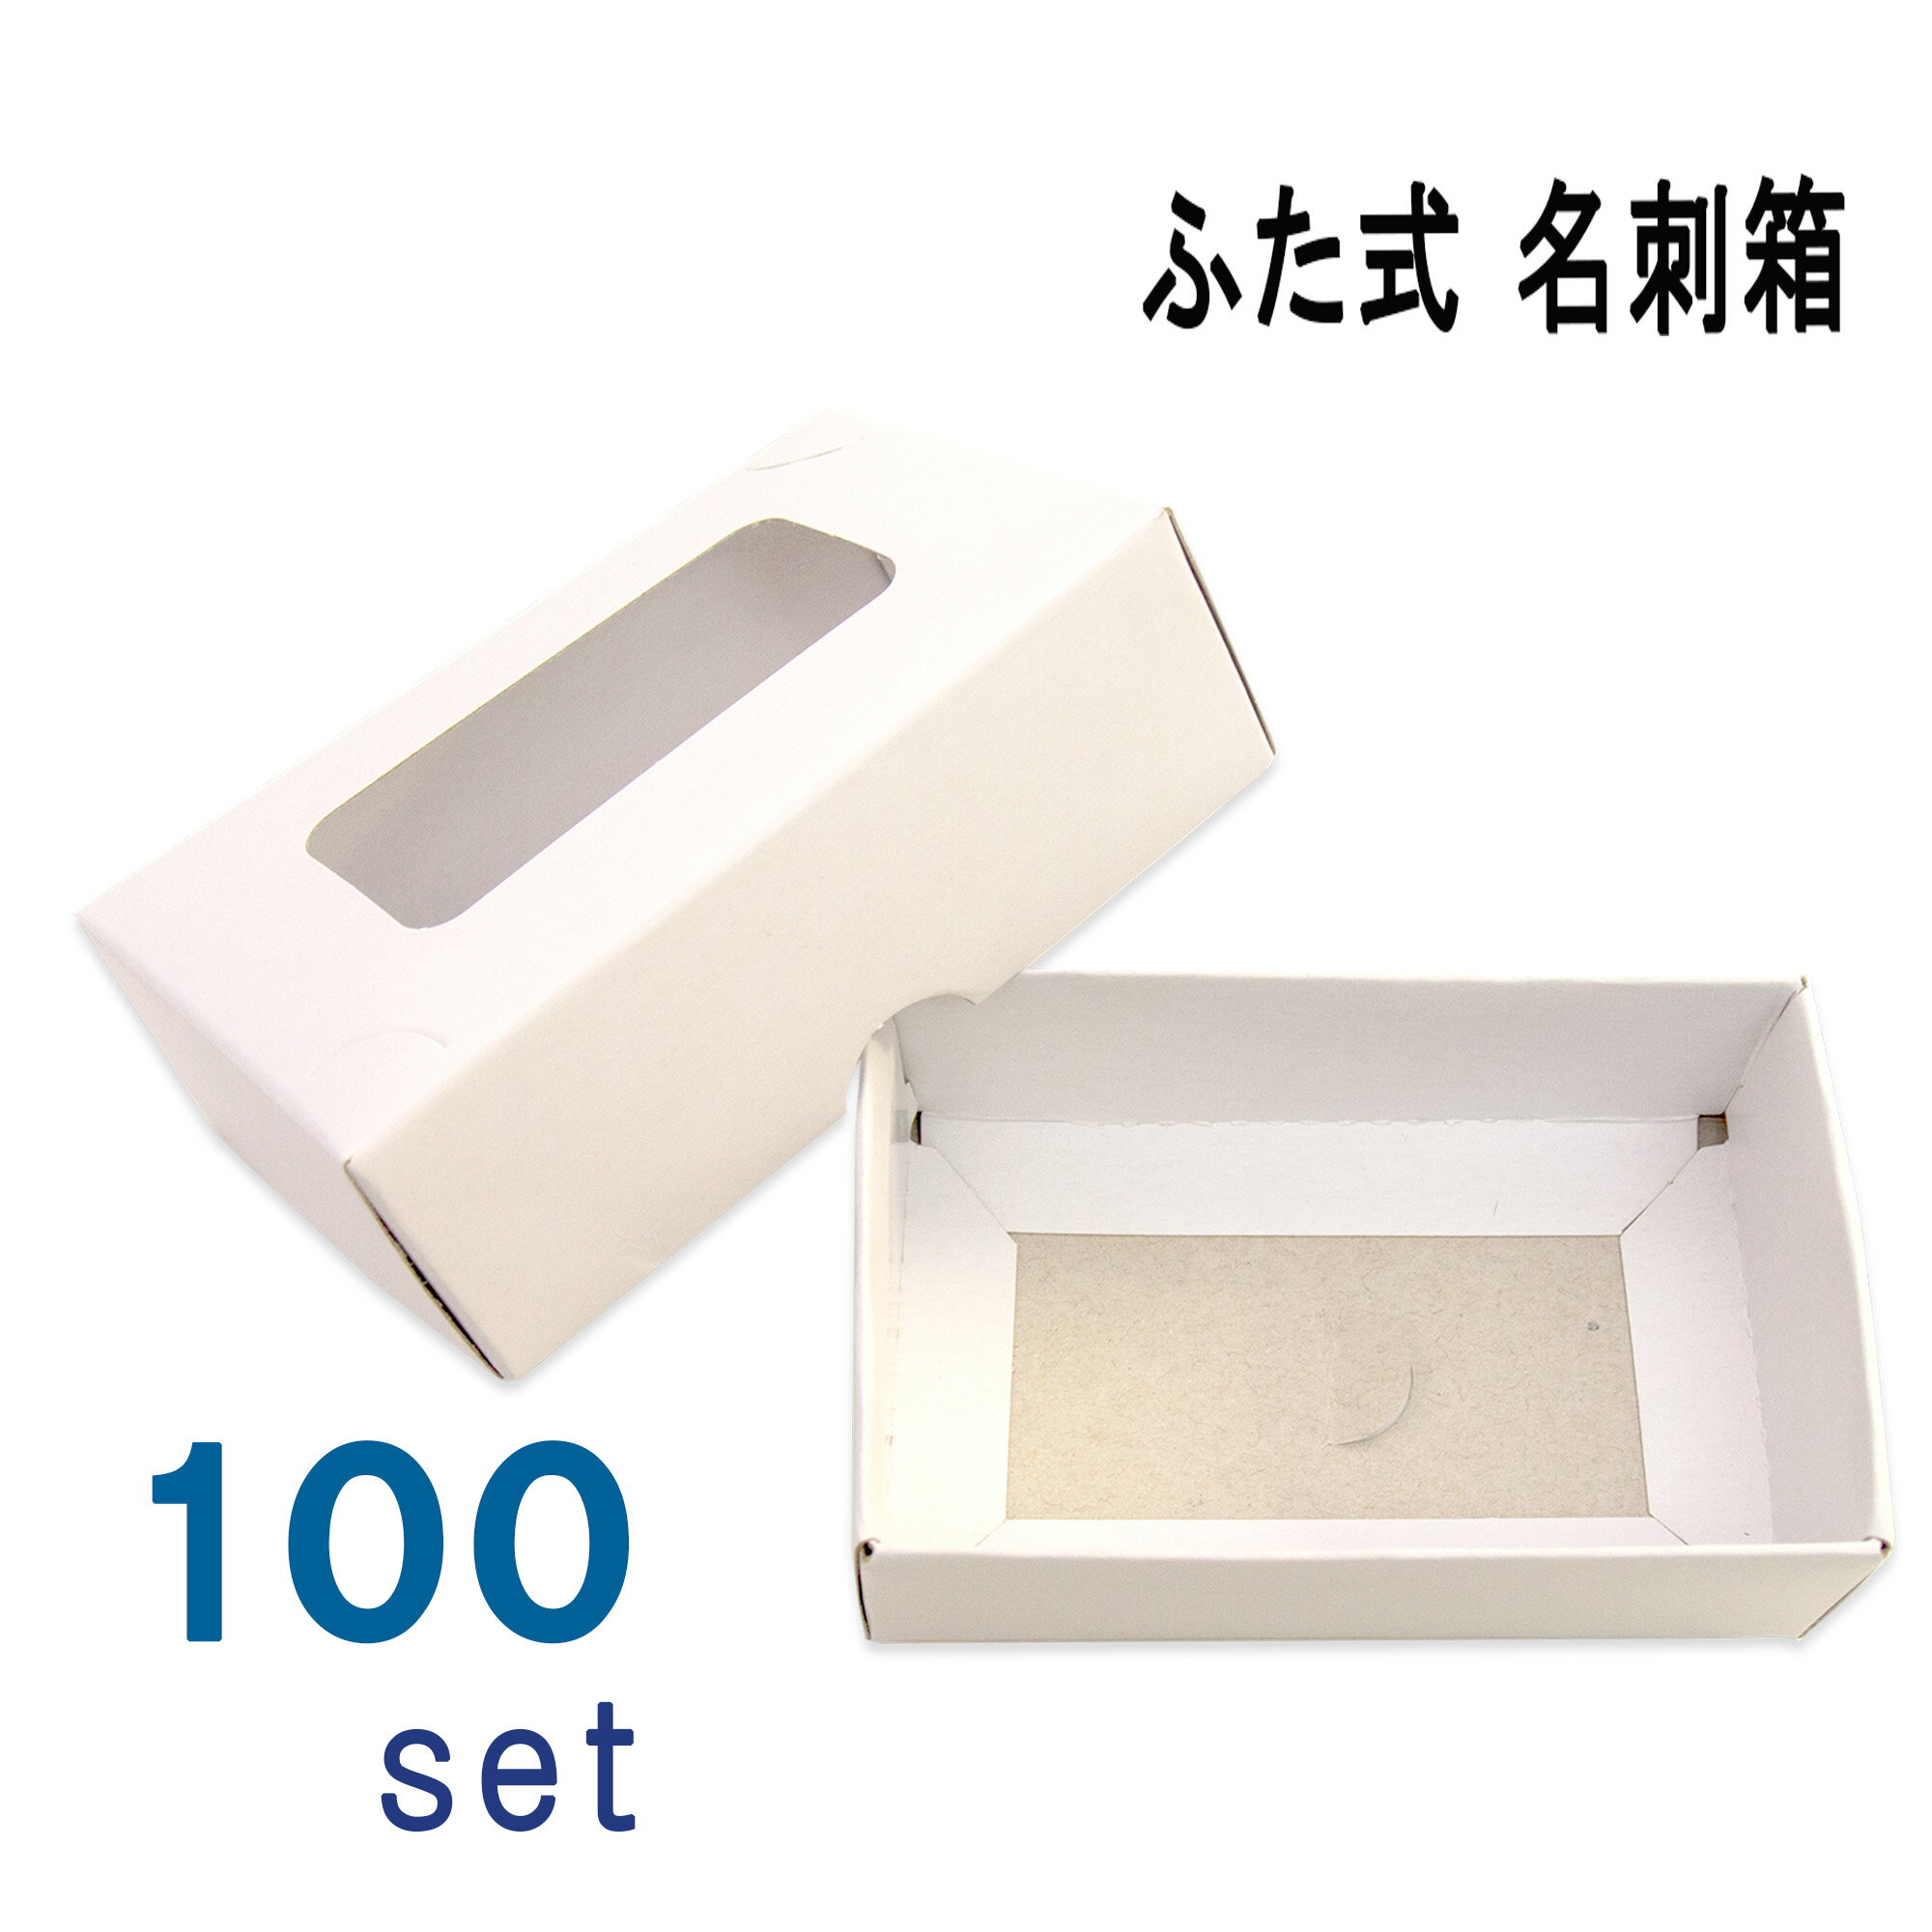 名刺ケース 紙製 名刺箱 ふた式 窓あり 100 組入り 業務用 日本製 送料無料 1